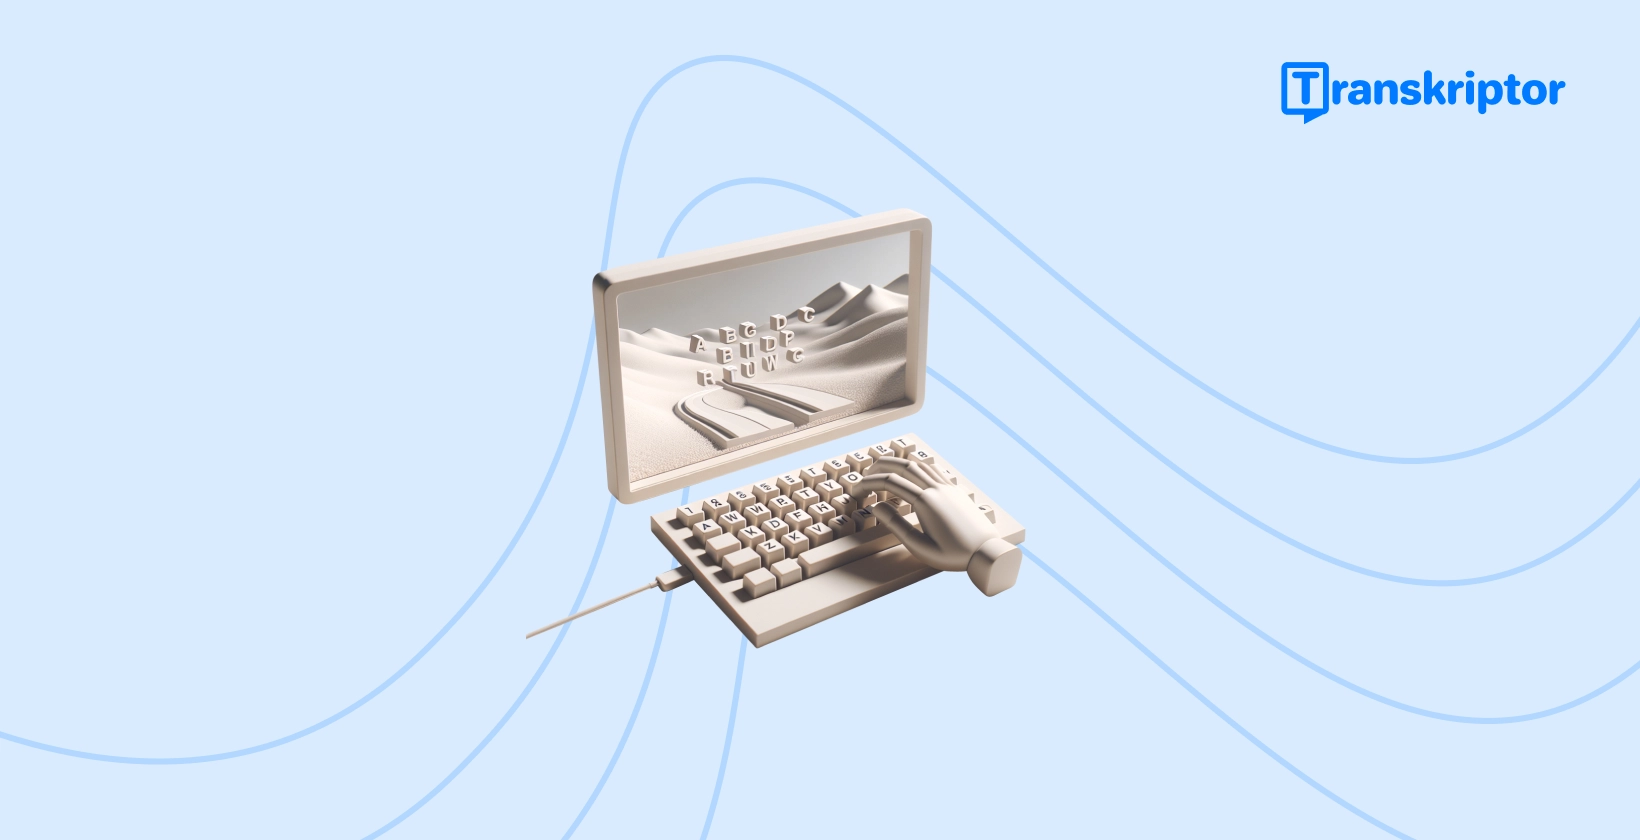 一台老式打字机，按键在其纸卷上形成风景，代表了为 TikTok 视频添加引人入胜的字幕的创作过程。